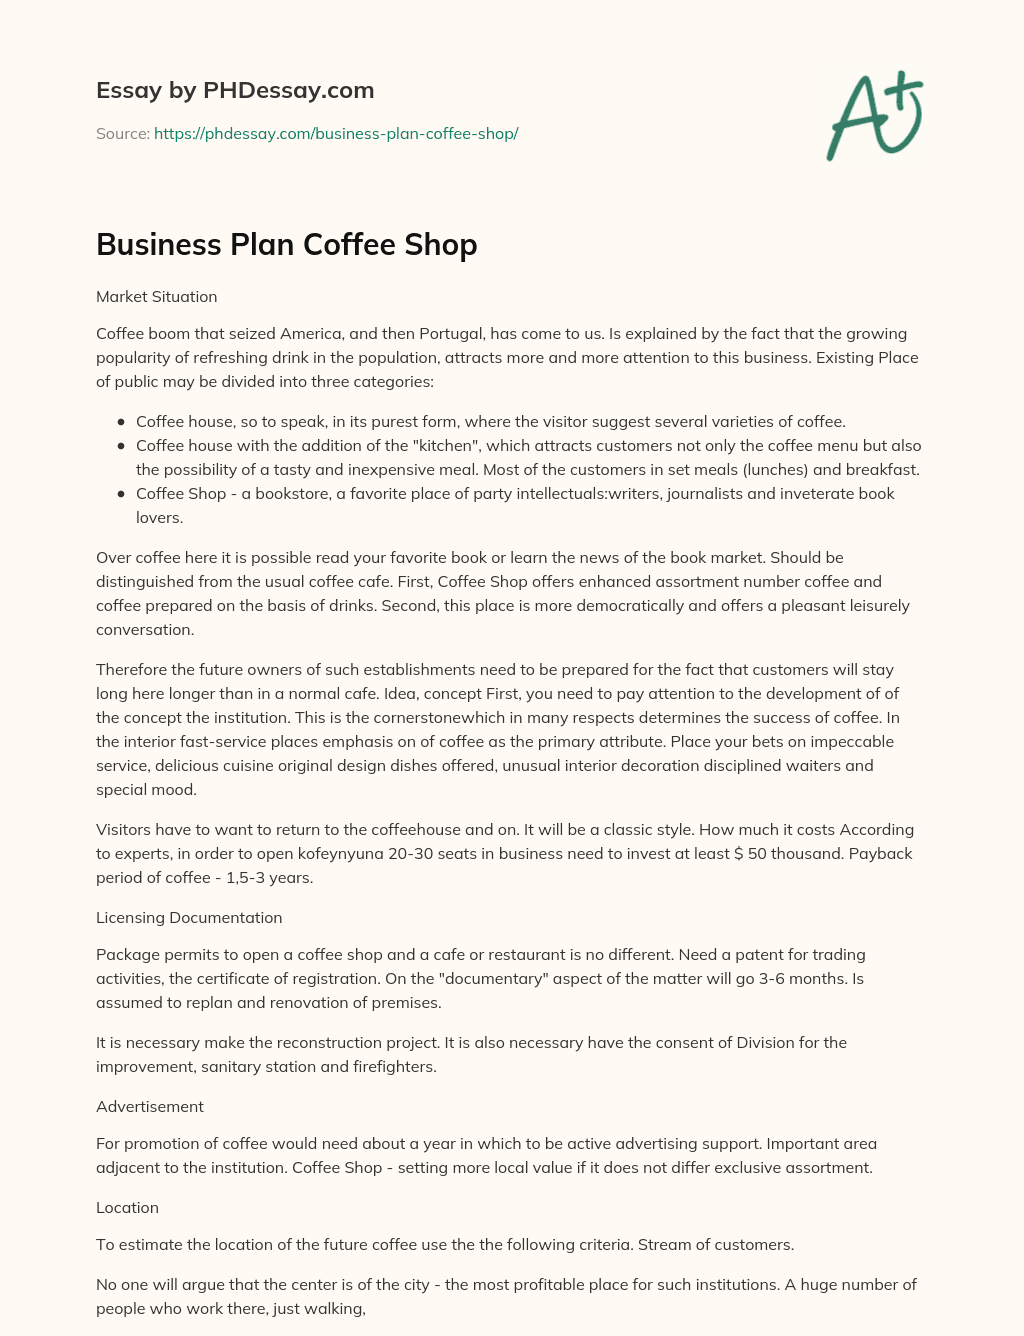 coffee shop essay in english